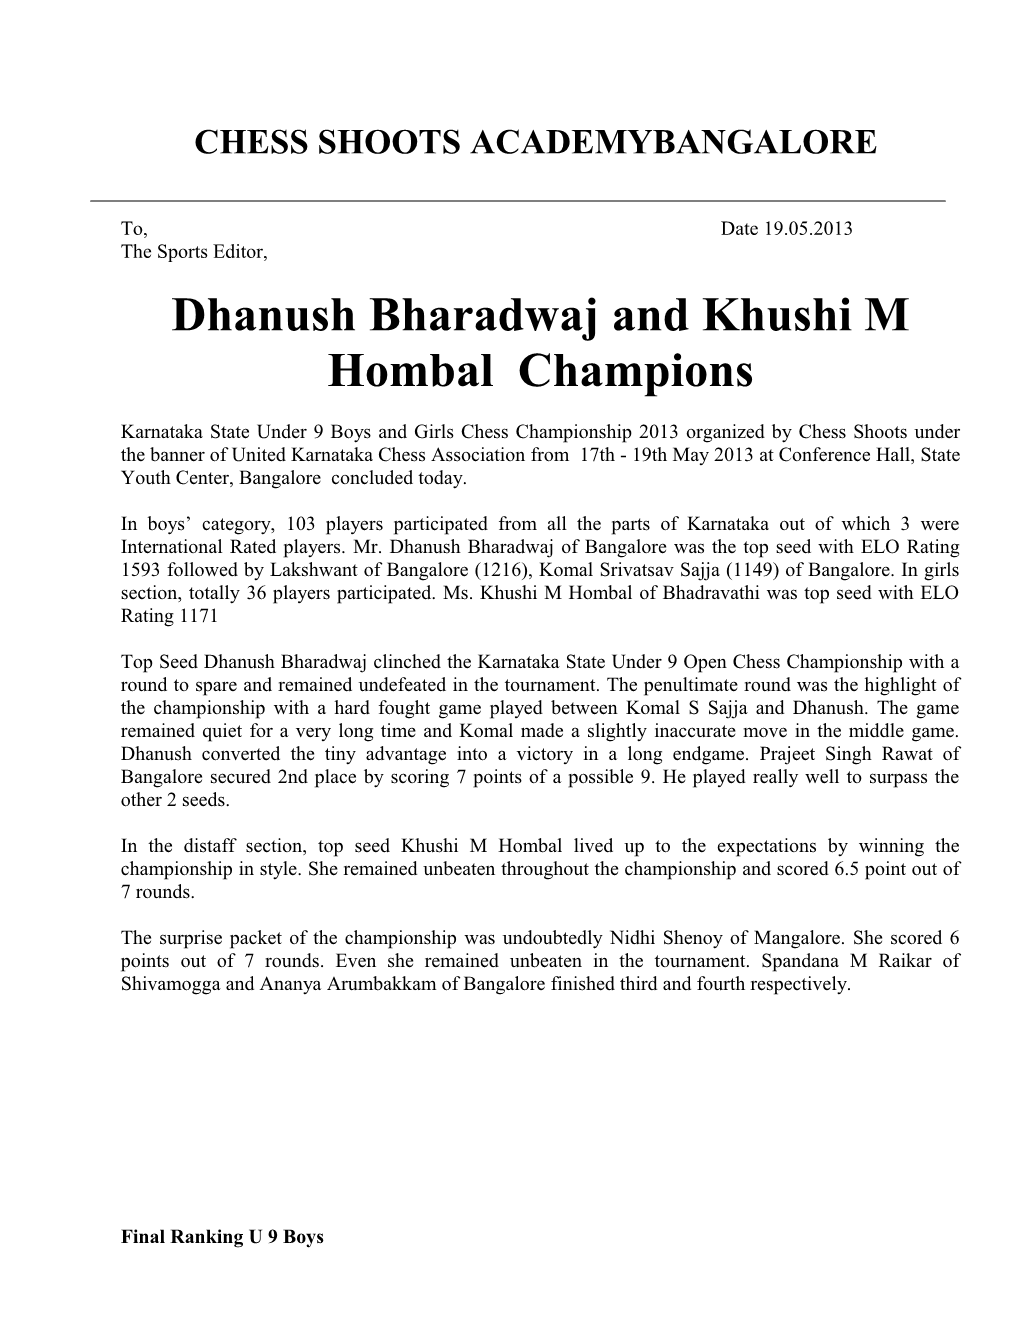 Dhanush Bharadwaj and Khushi M Hombal Champions